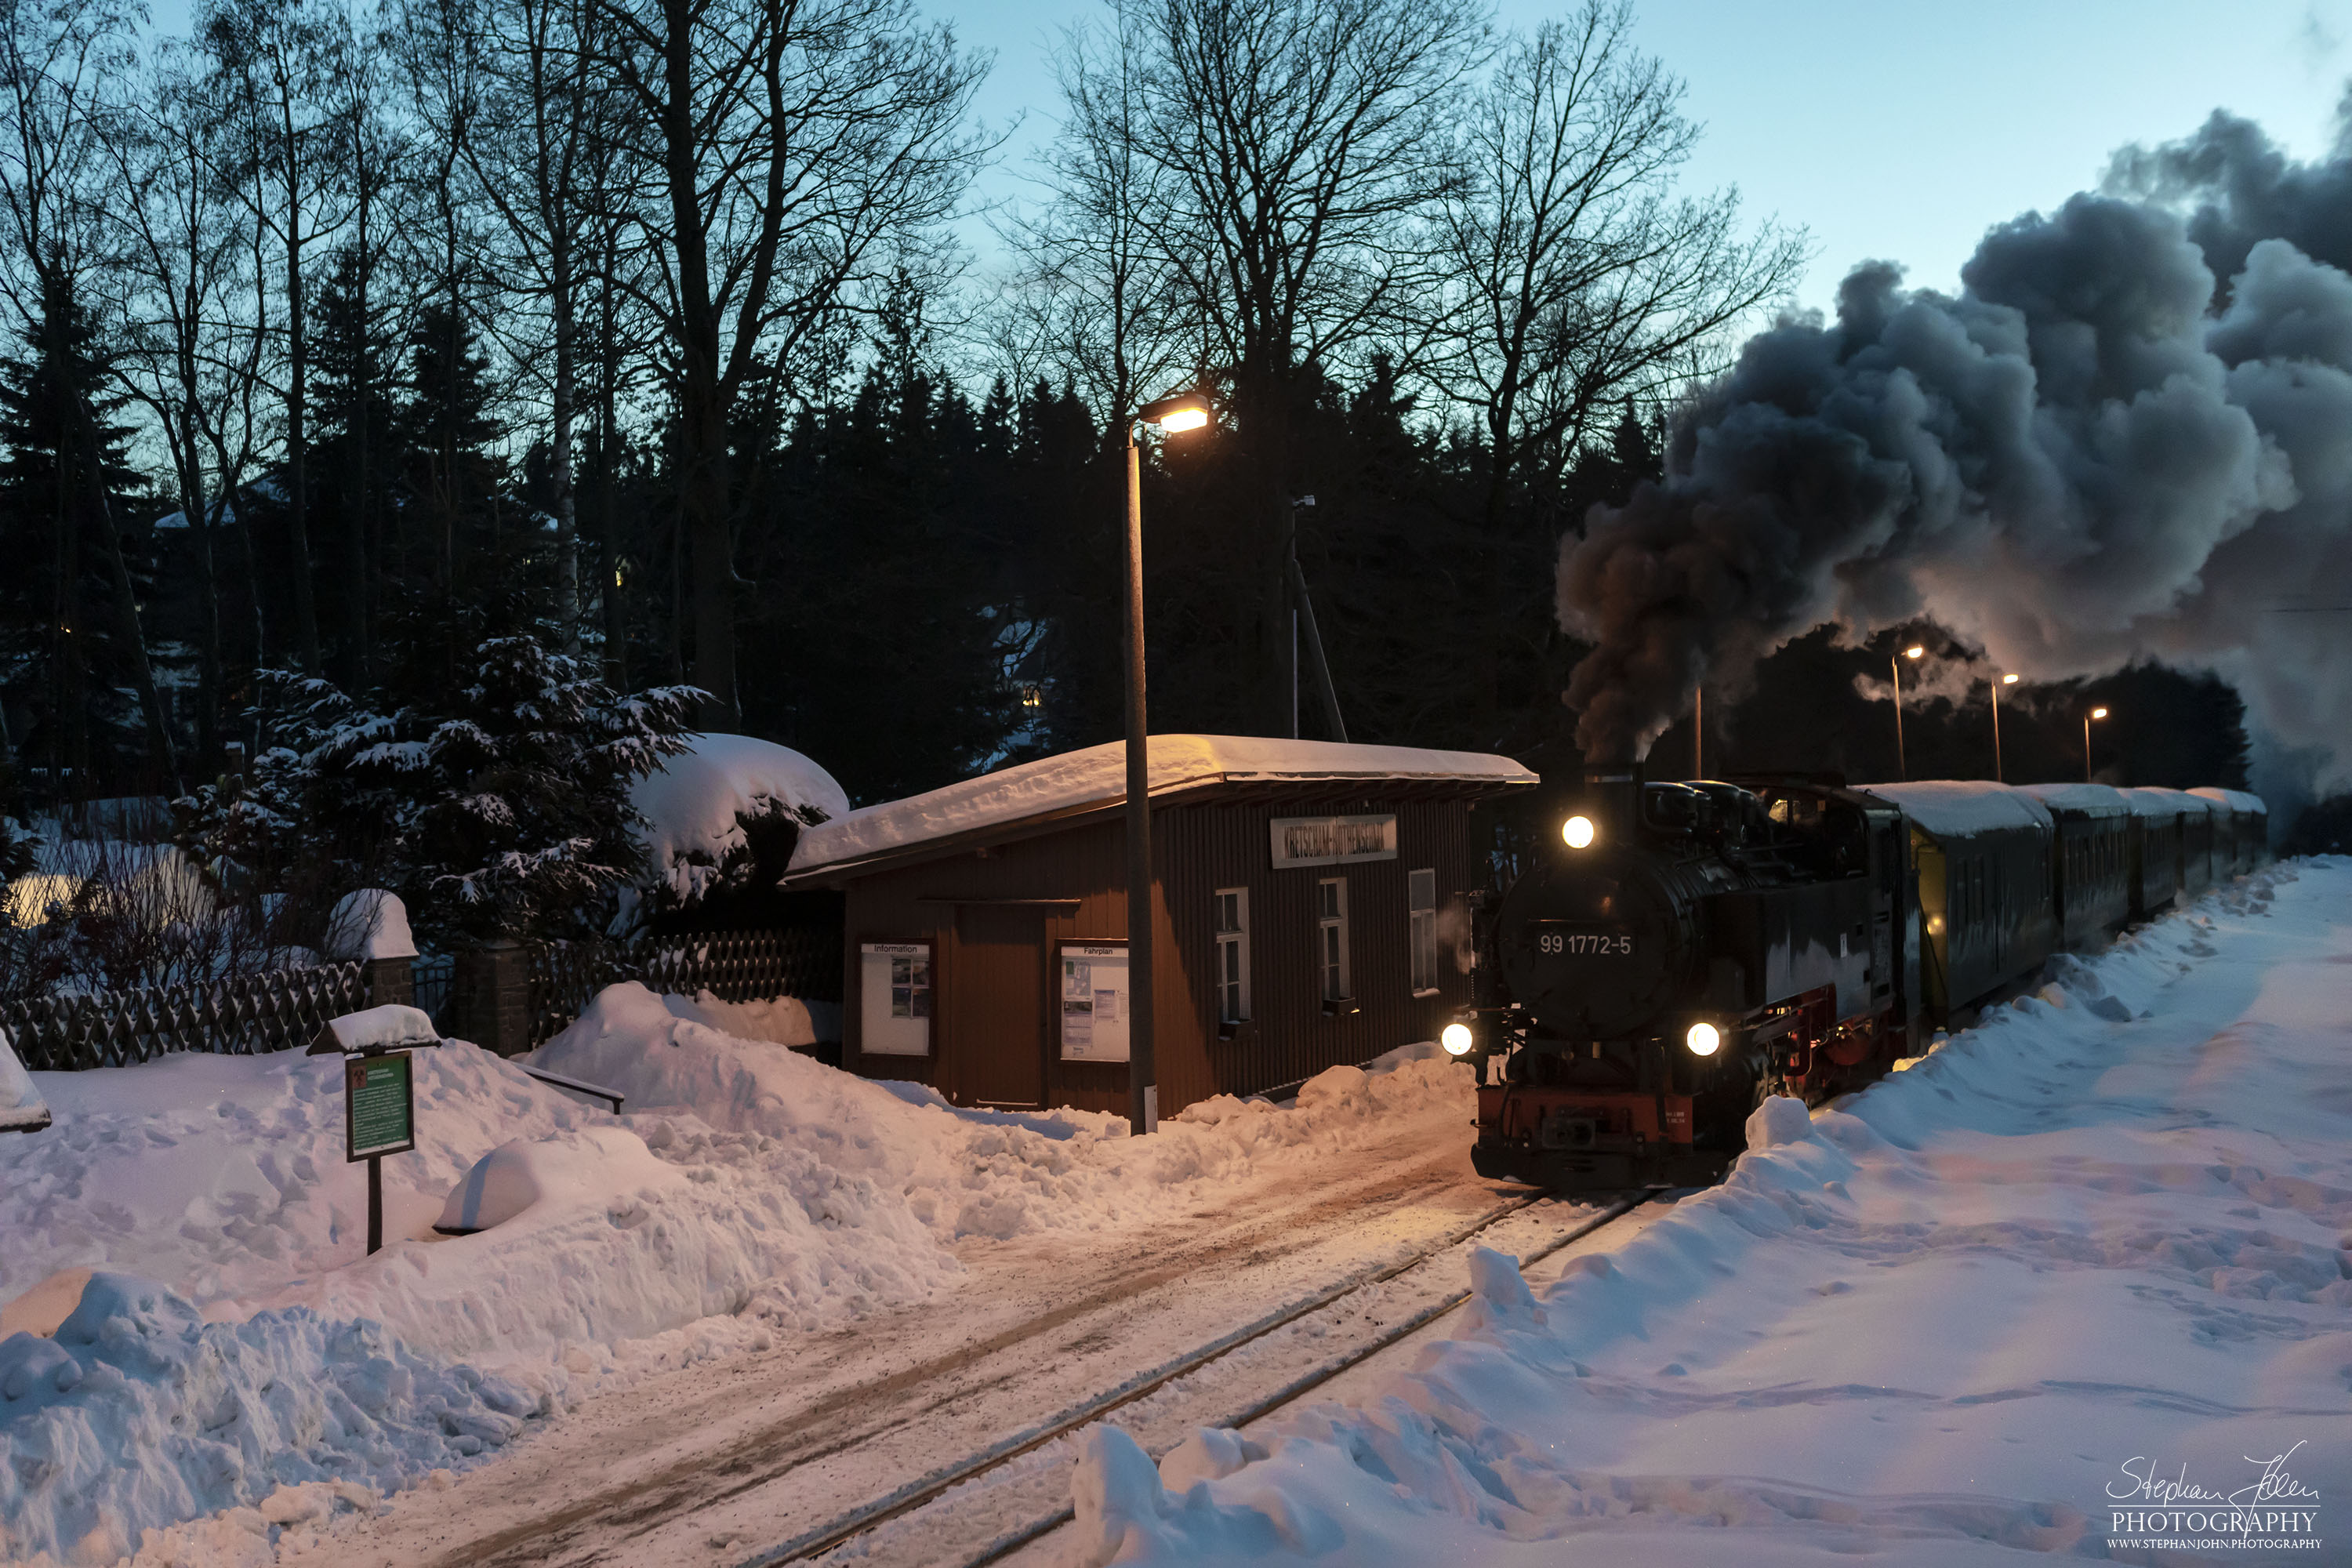 P 1009 mit Lok 99 1772-5 erreicht den Bahnhof Kretscgam-Rothensehma